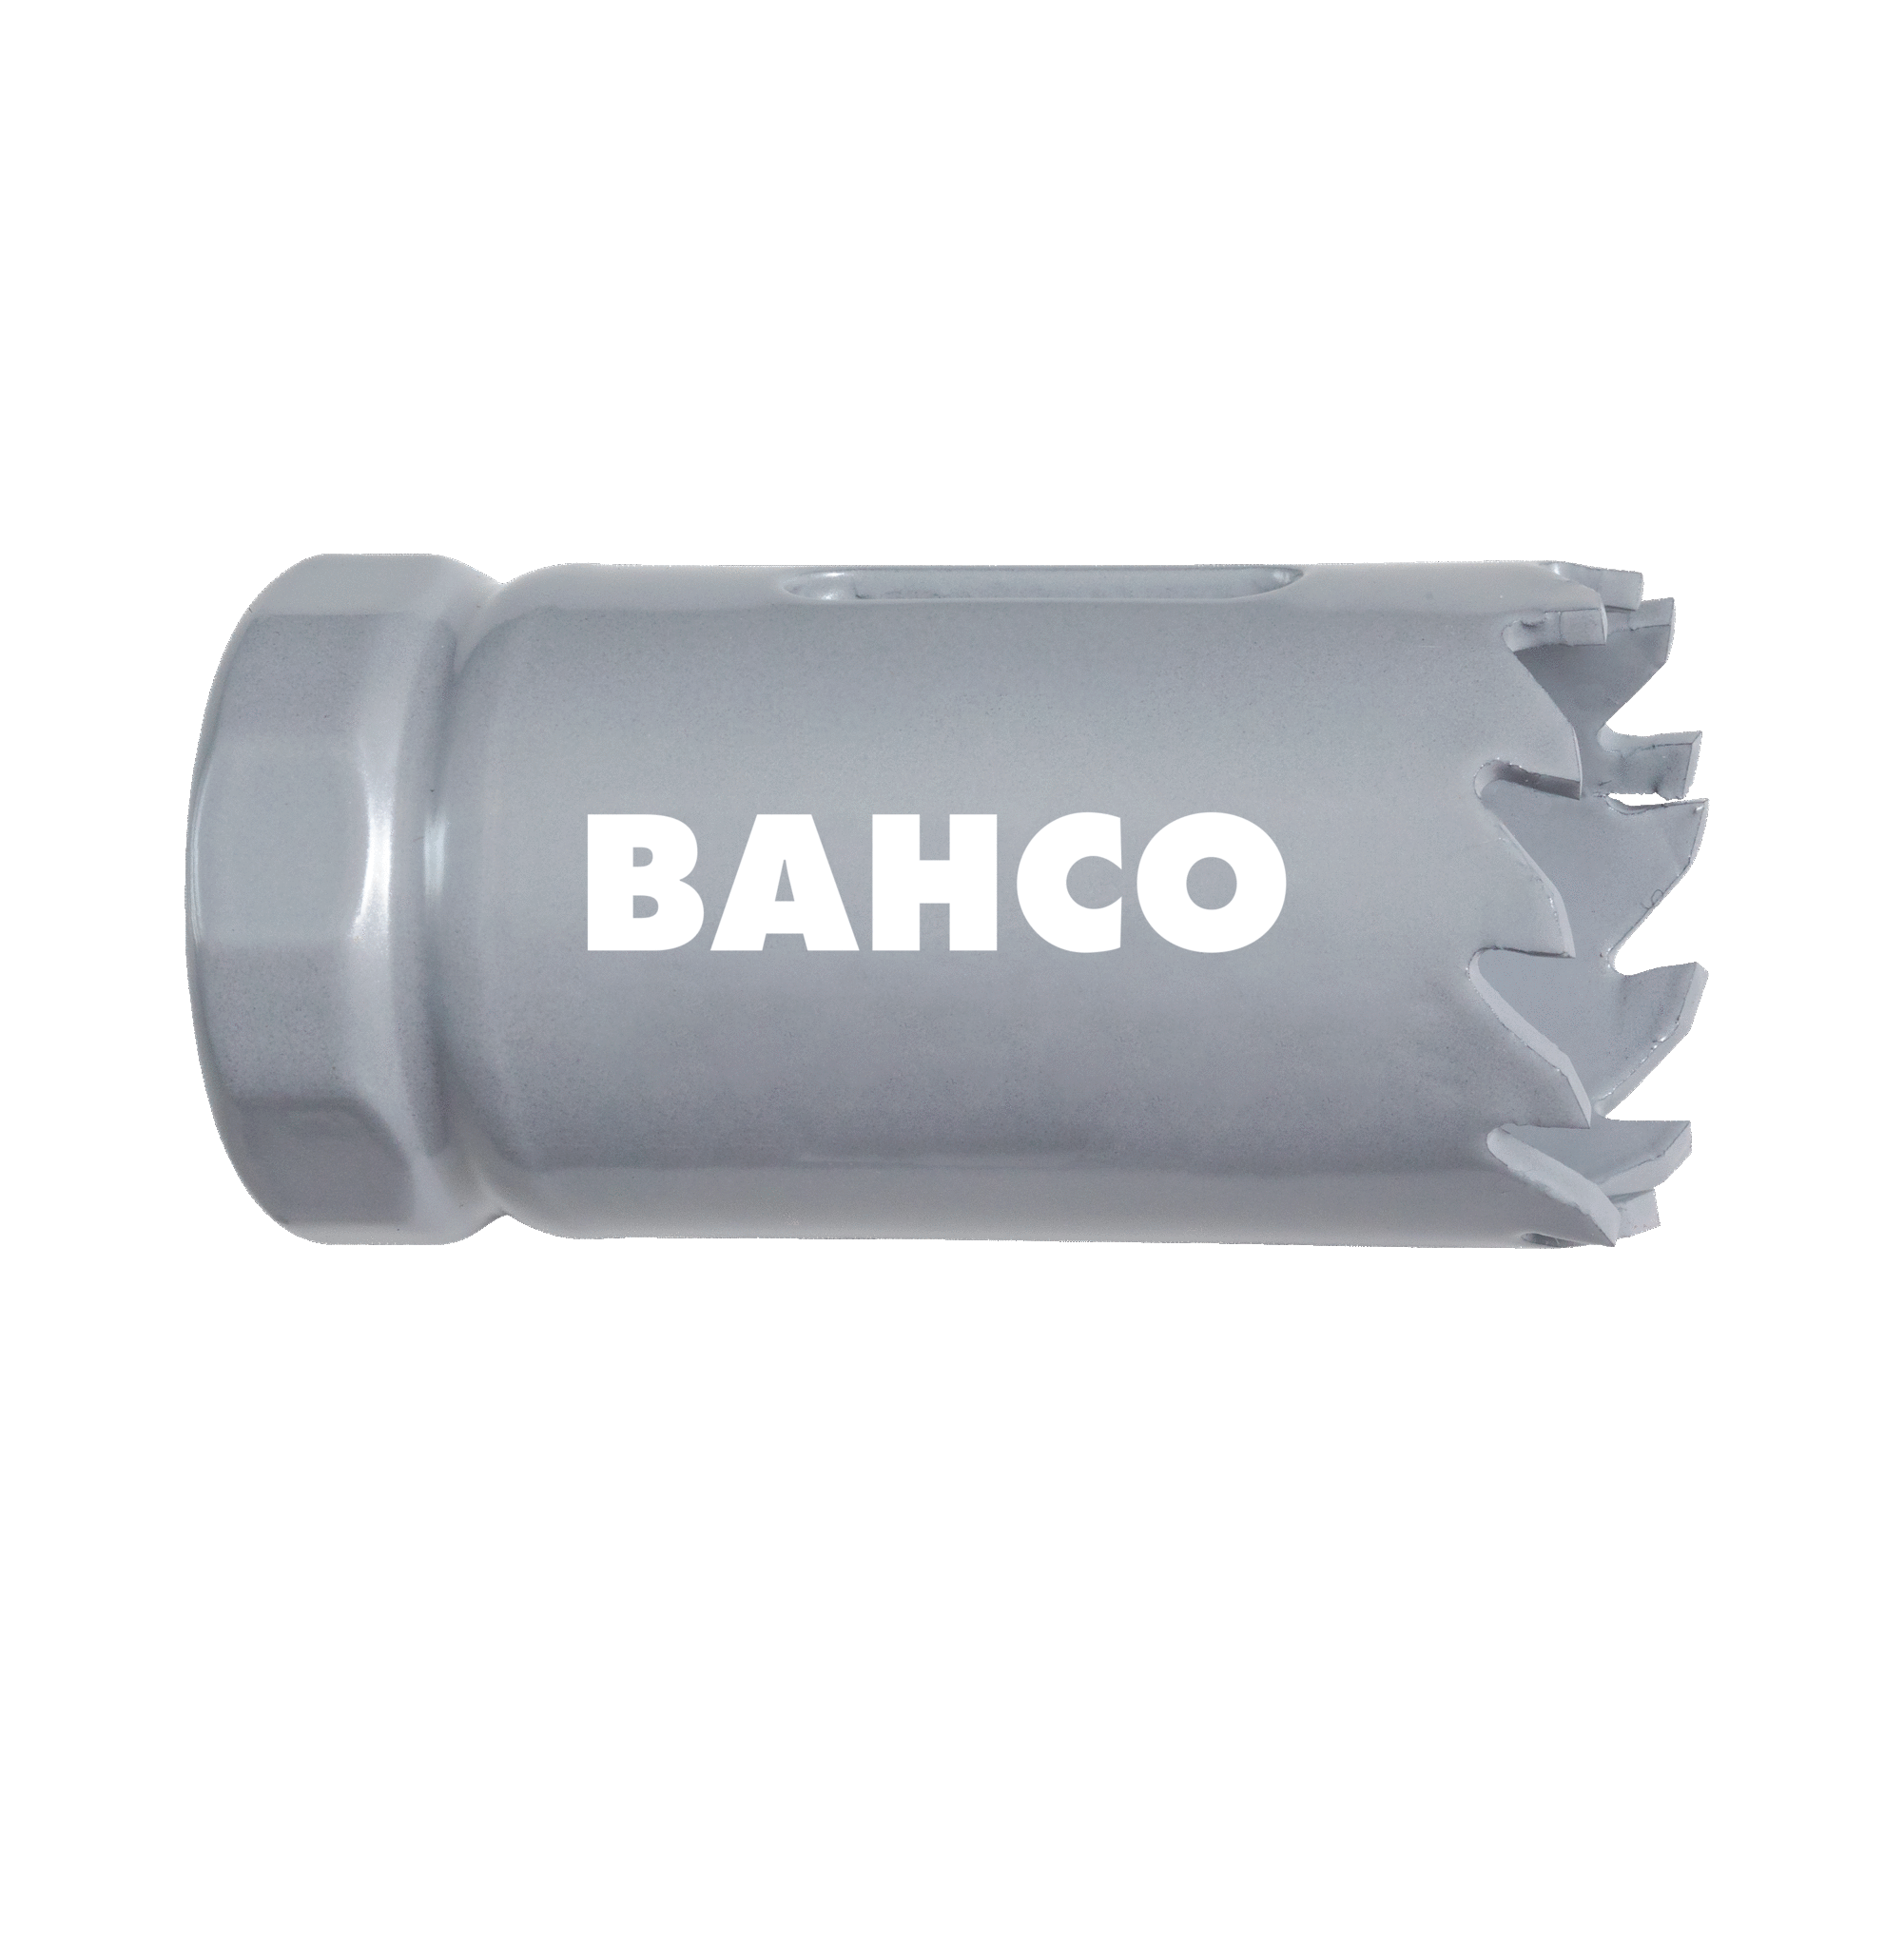 Кольцевые пилы с твердосплавными напайками BAHCO 3832-21